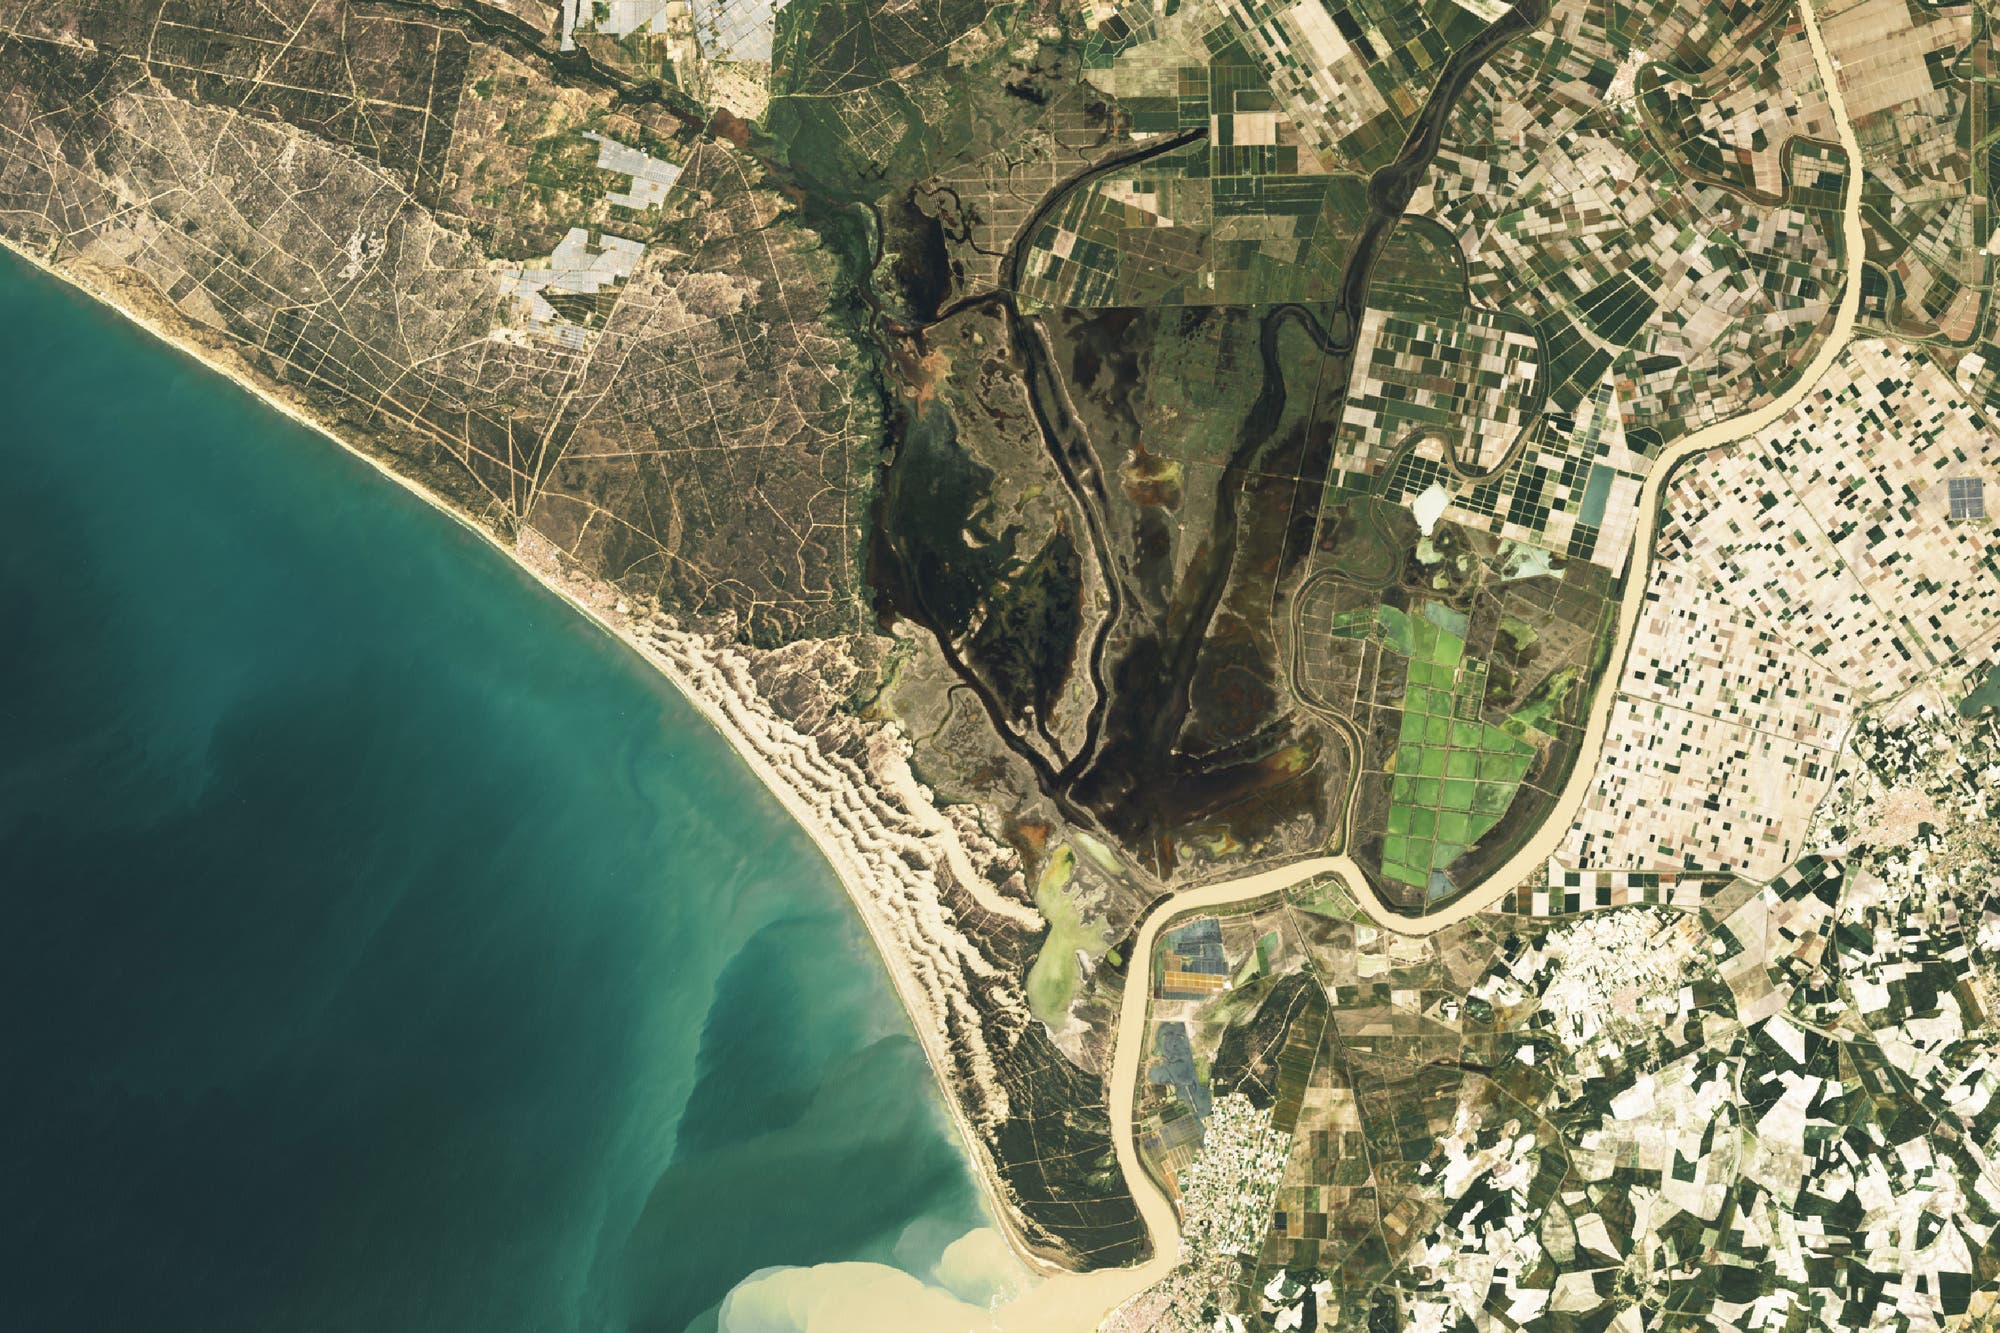 Satellitenbild des Doñana-Nationalparks mit Umgebung: Der Park zeichnet sich durch dunkle Grüntöne aus, während in der Umgebung die klaren Strukturen der Felder erkennbar sind